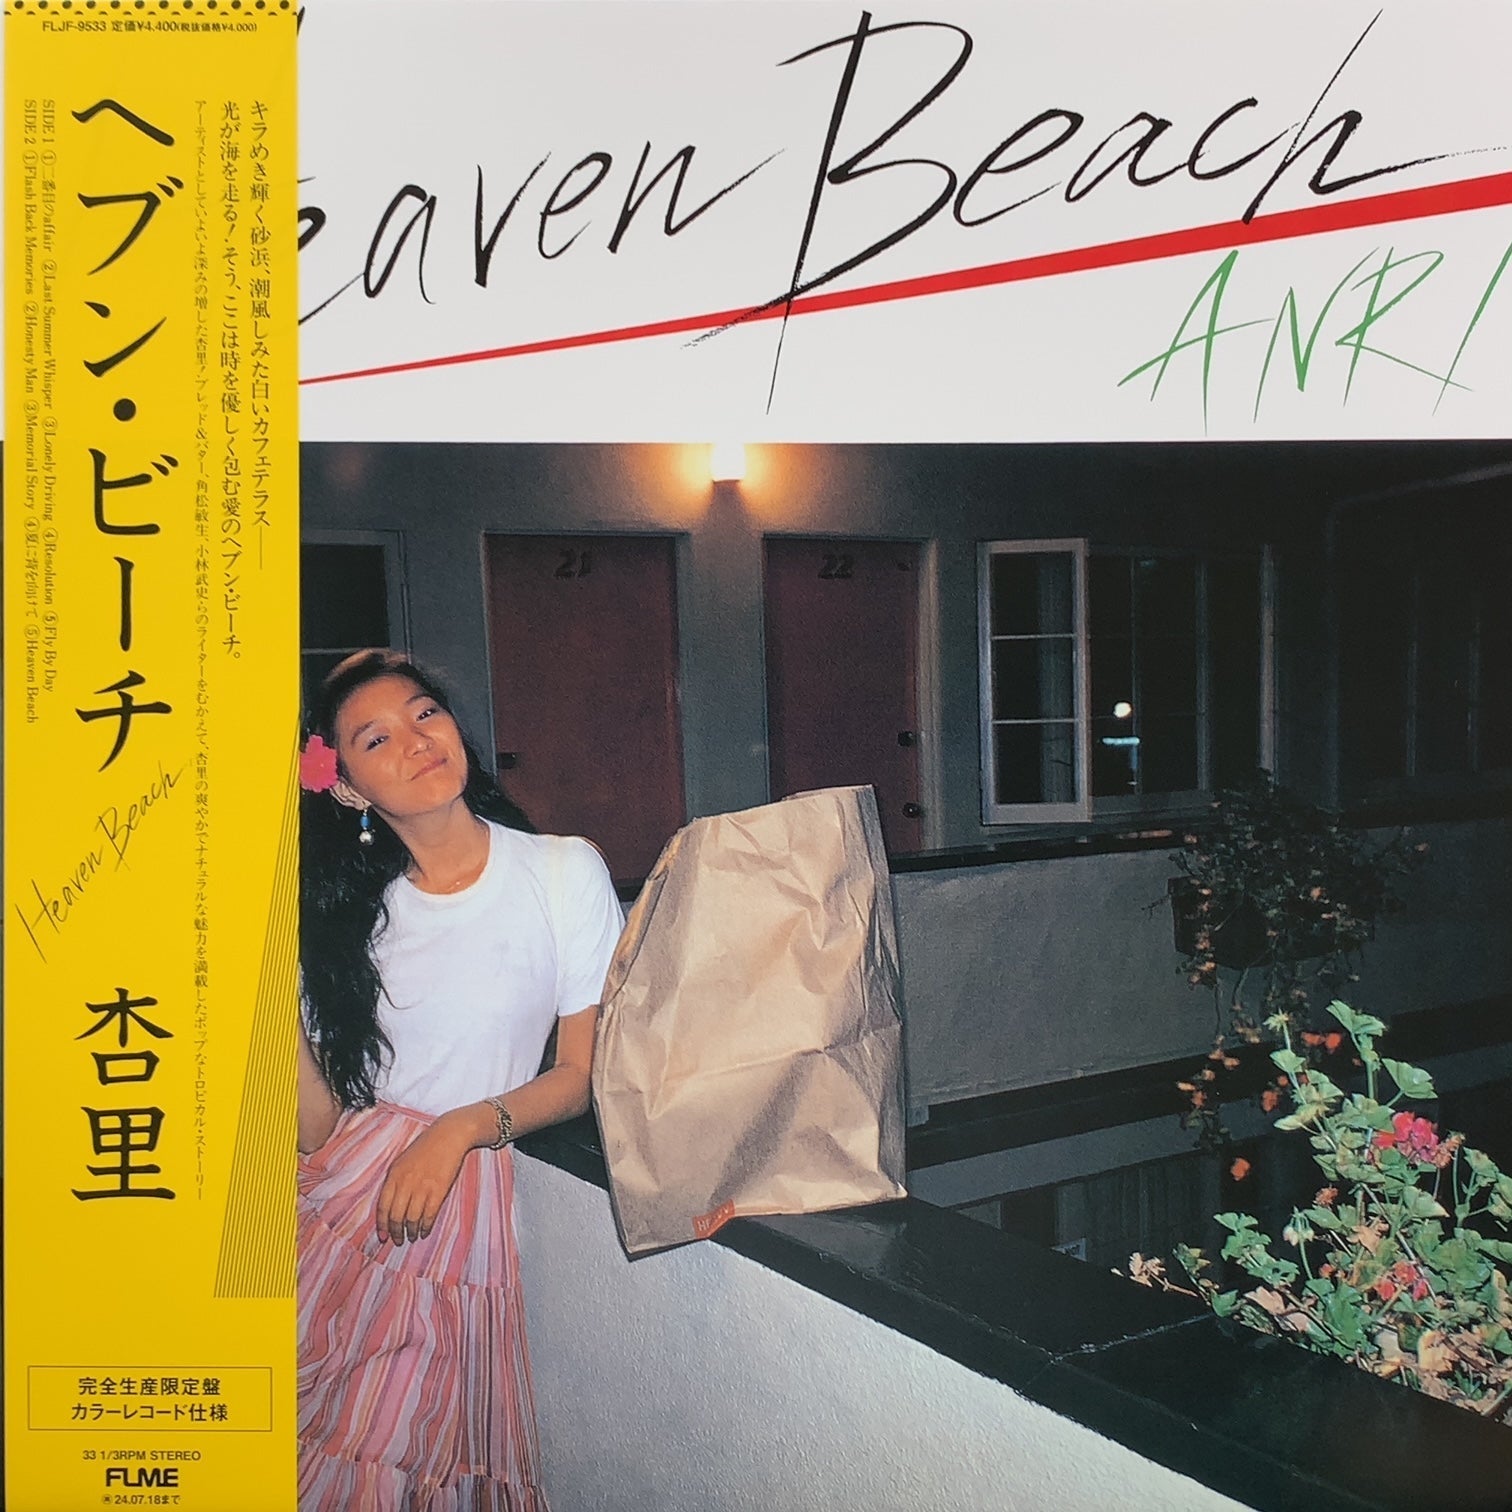 杏里 / Heaven Beach (FLJF-9533